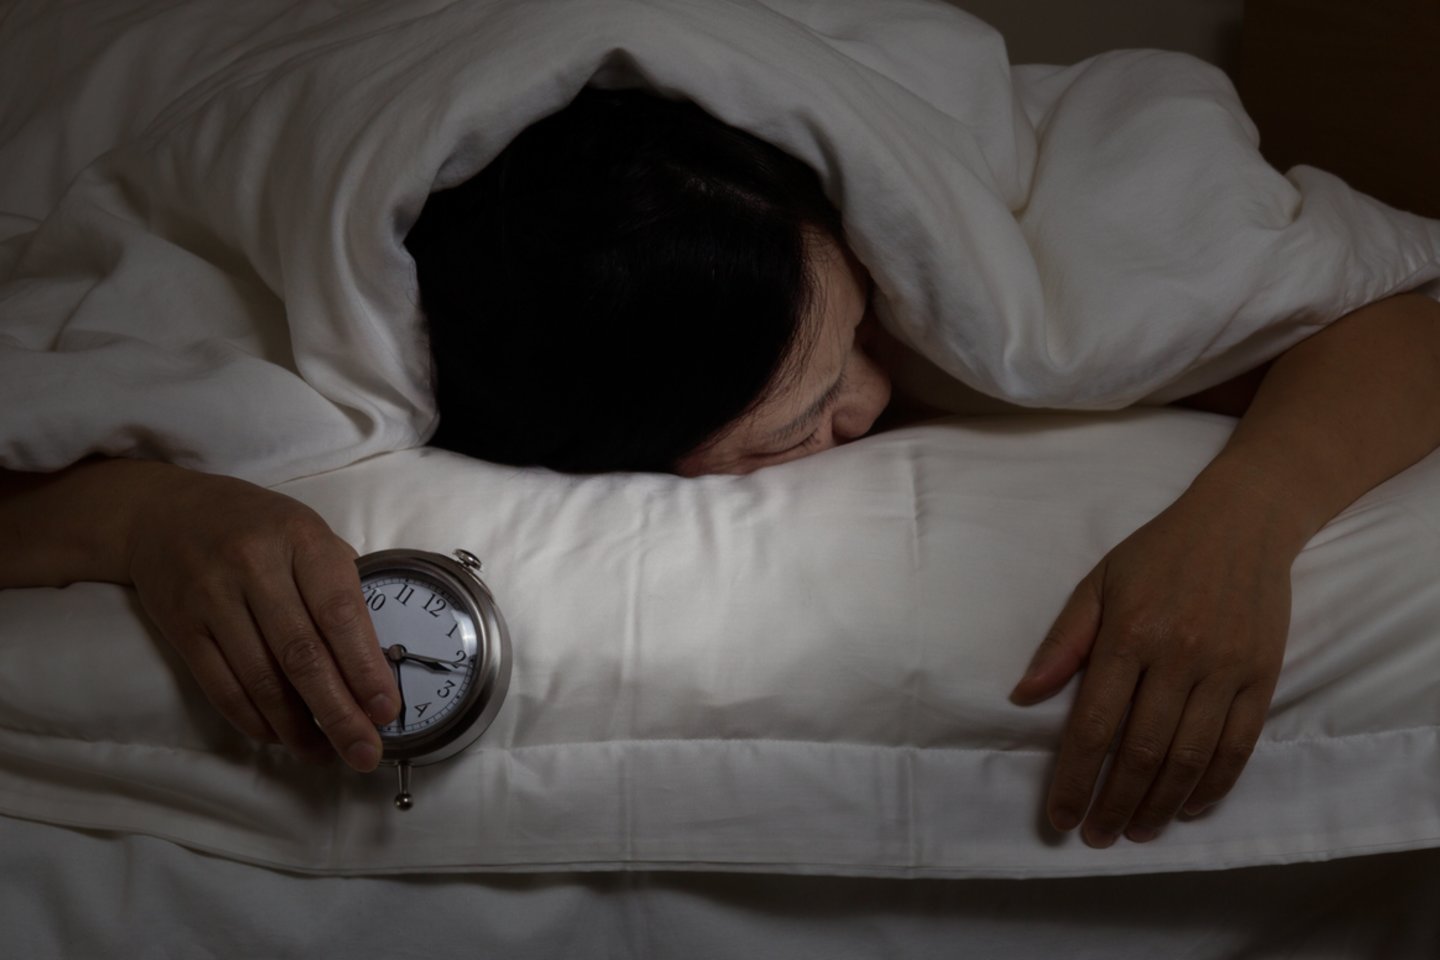  Žmogui reikalingo miego trukmė labai priklauso nuo jo gyvenimo tarpsnio. Tai lemia ir amžius, ir aktyvumo lygis, taip pat bendra sveikatos būklė bei kasdieniai įpročiai.<br>123rf.com nuotr.